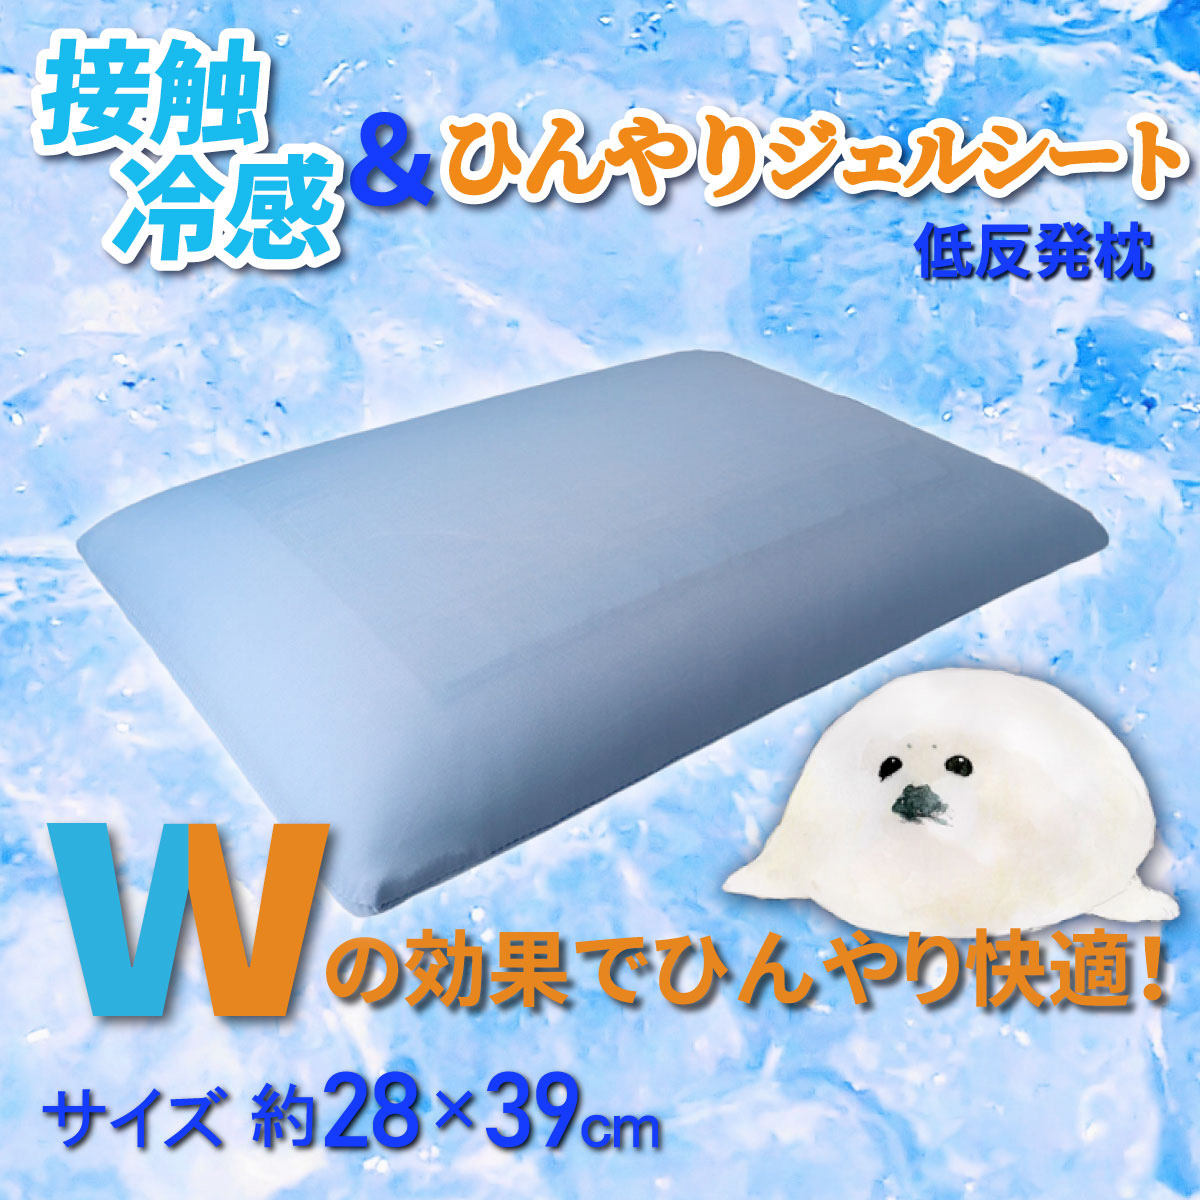 接触冷感とジェルシート効果でひんやりの低反発枕の説明とジェルシートが付いた枕写真のバナー